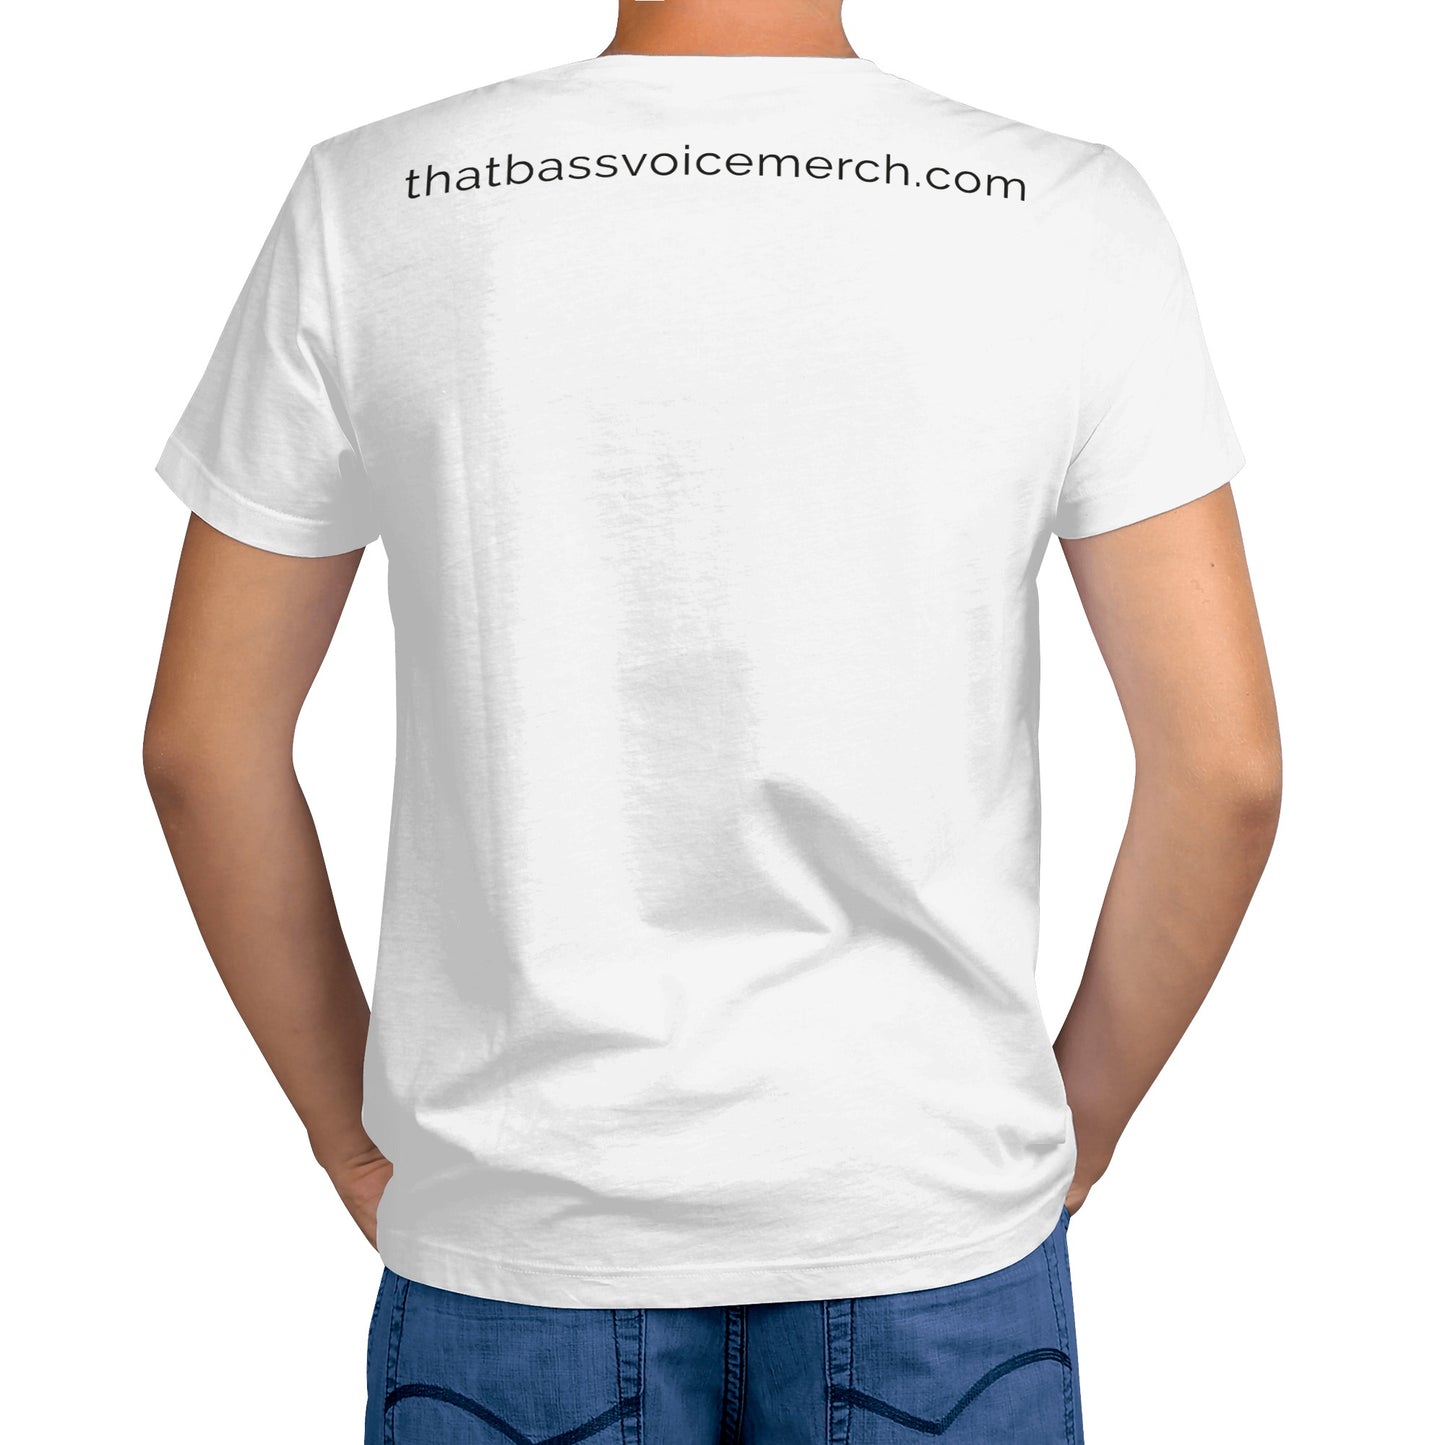 "ContraBASS" Men's Print T-shirt